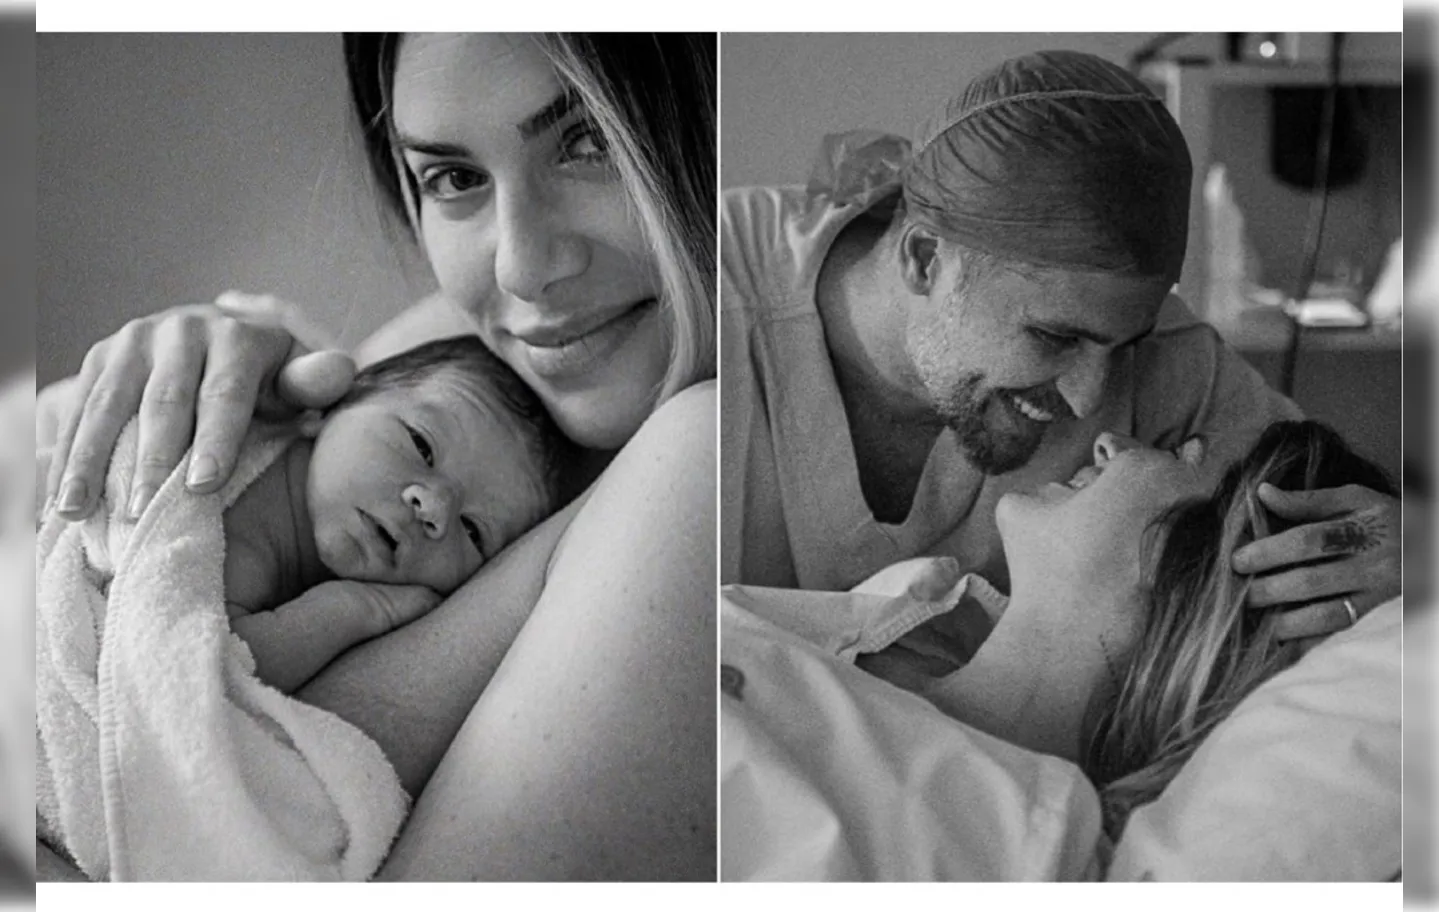 Os atores puderam registrar nascimento do filho com fotógrafo profissional enquanto o mesmo pedido foi negado a outros casais | Foto: Reprodução | Instagram